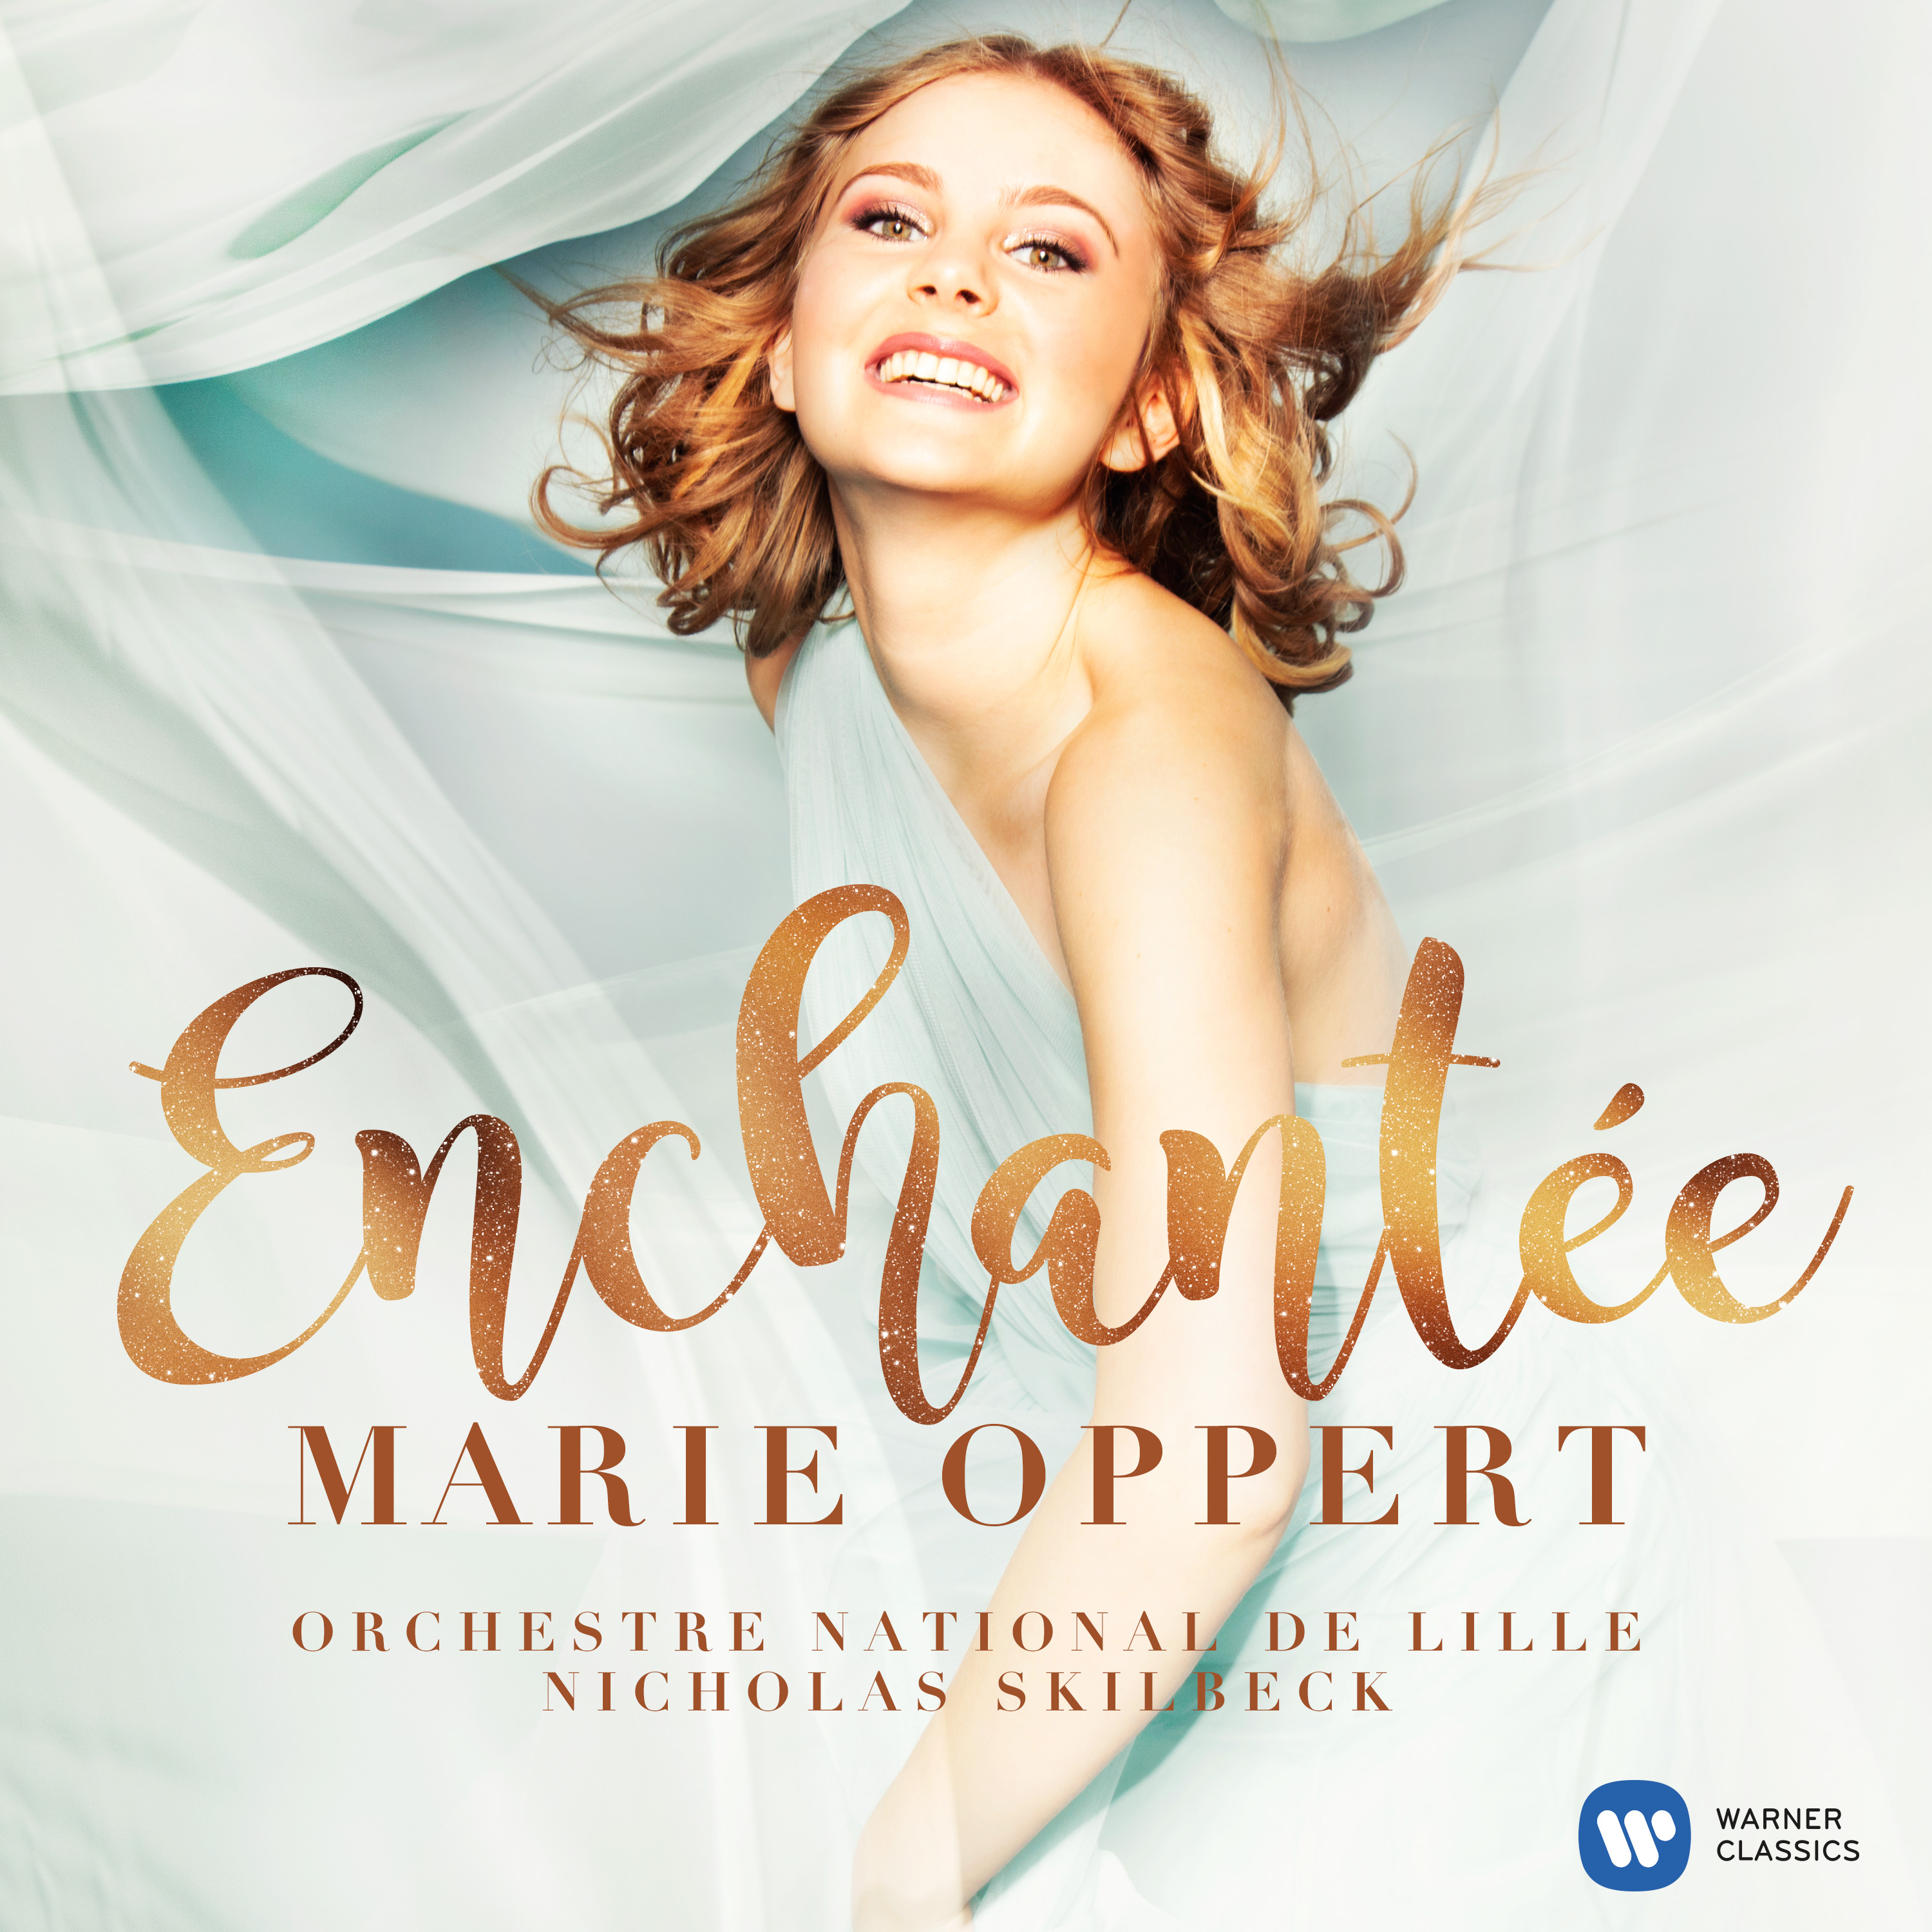 Enchantée, le premier album de Marie Oppert | Warner Classics
cadeaux de noel comédie musicale